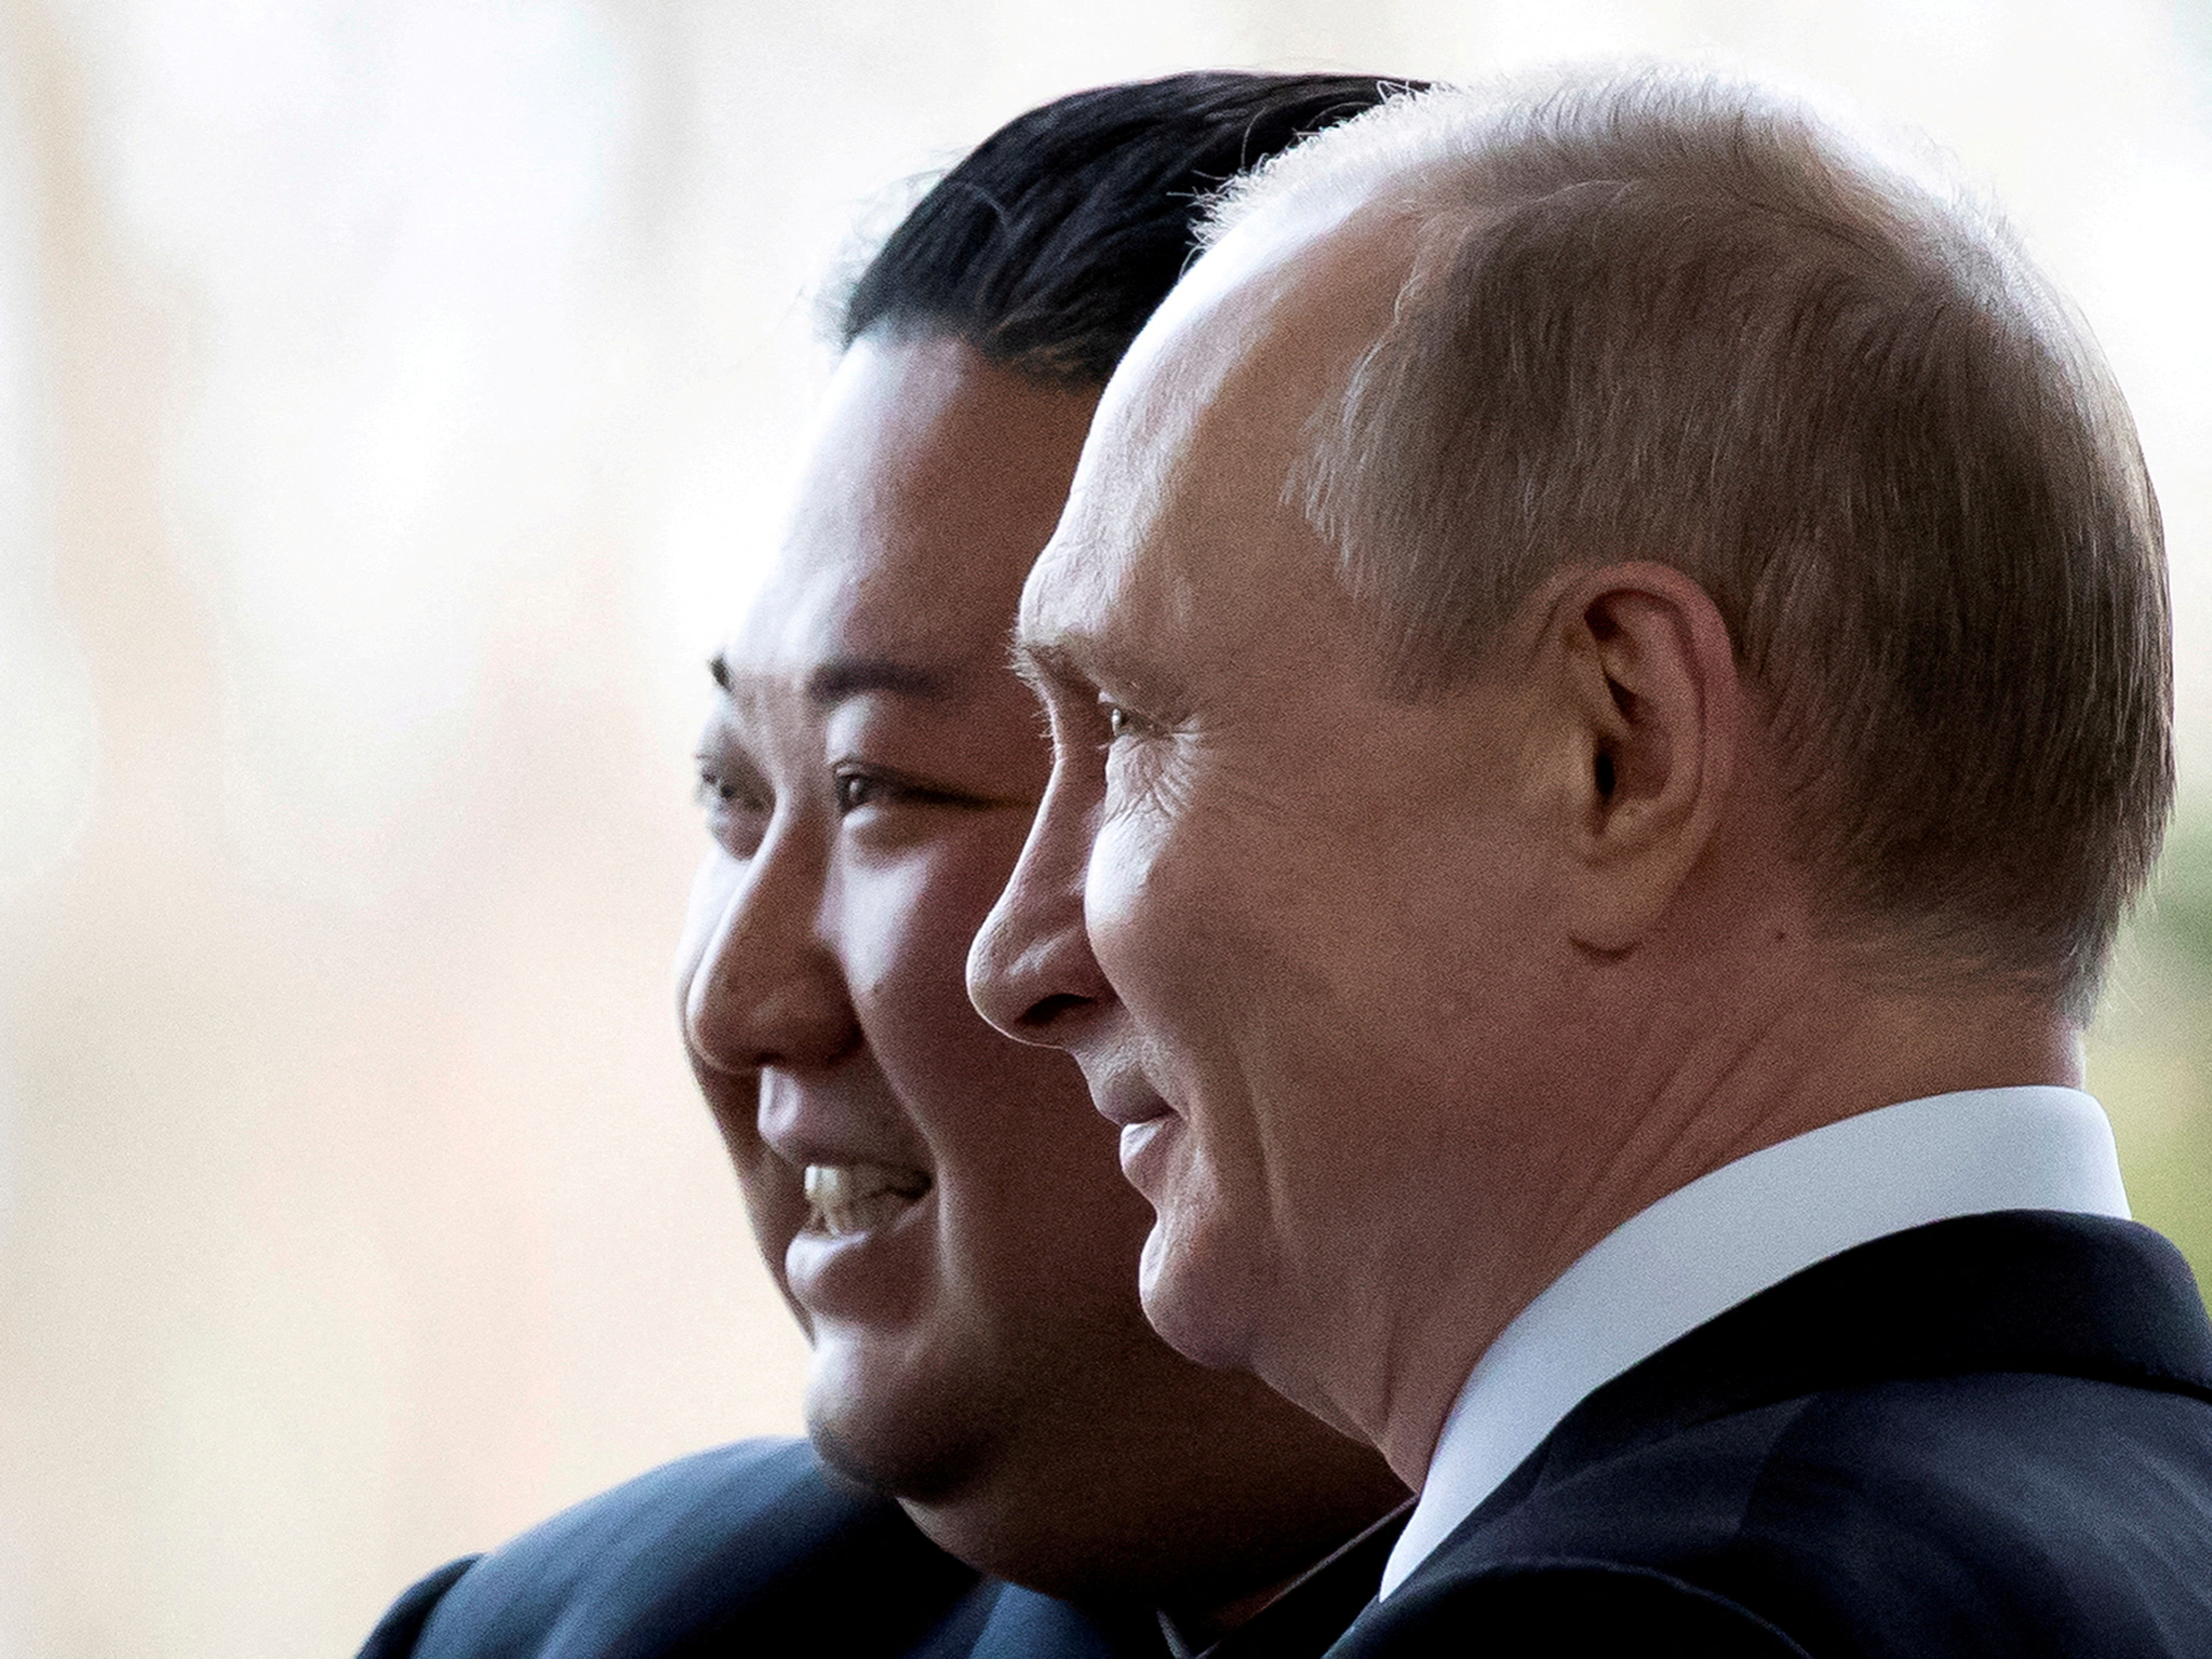 Russian President Vladimir Putin and North Korea's leader Kim Jong Un meet in Vladivostok in 2019